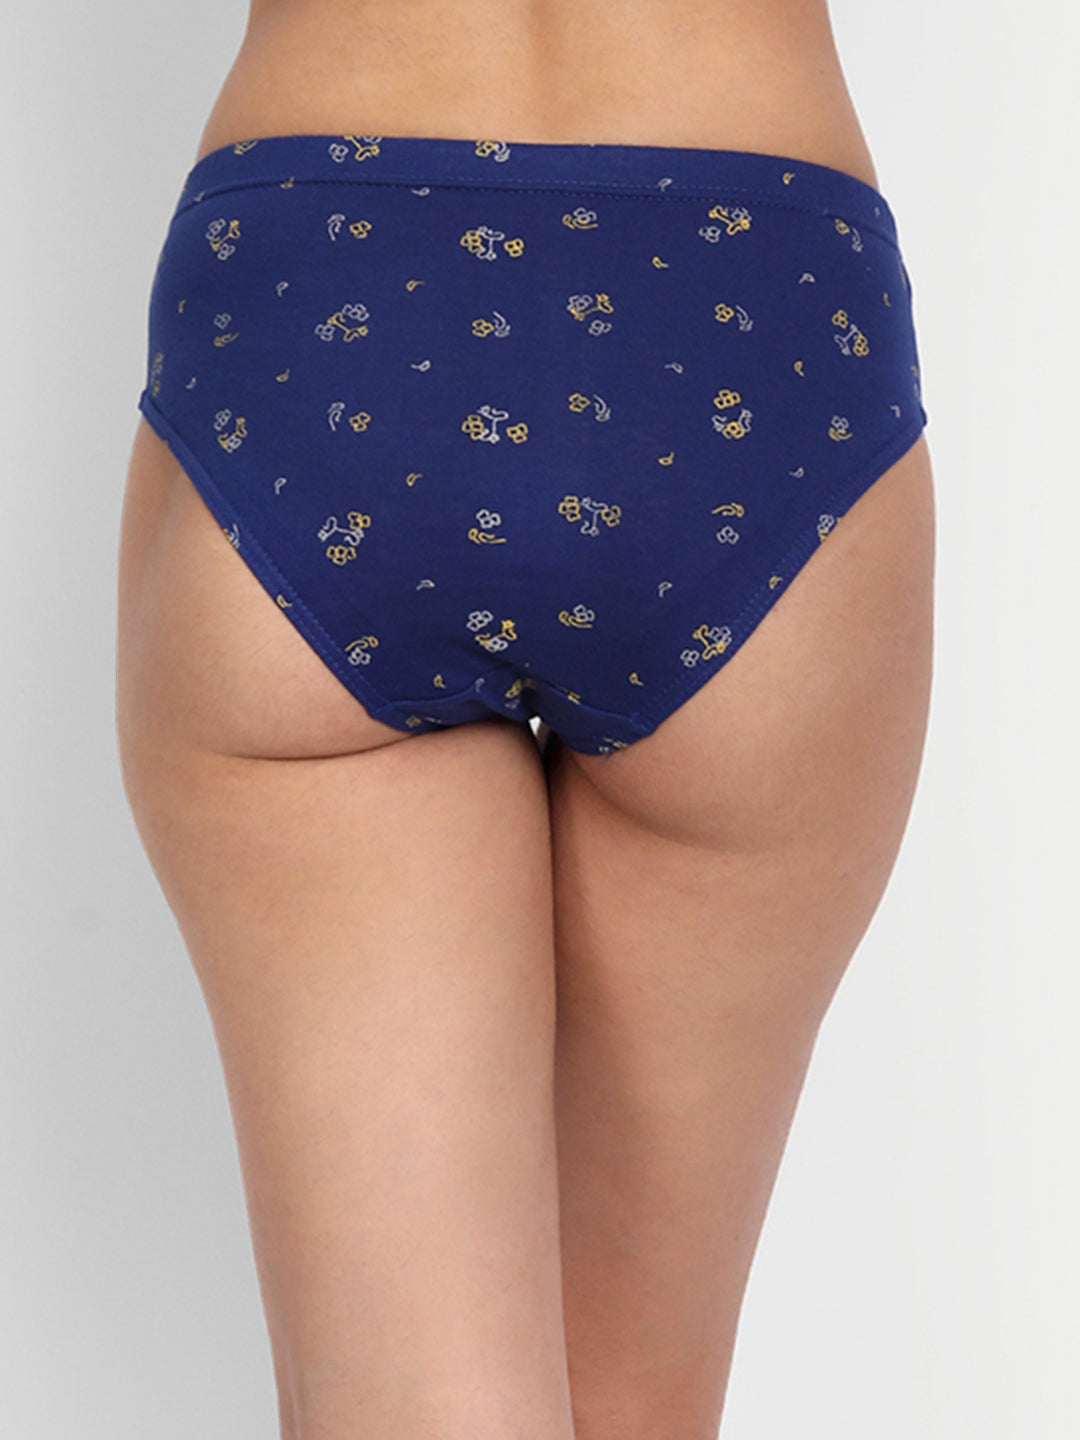 Buy Women Elastic Panty (Pack Of 3) Combo Offer: TT Bazaar